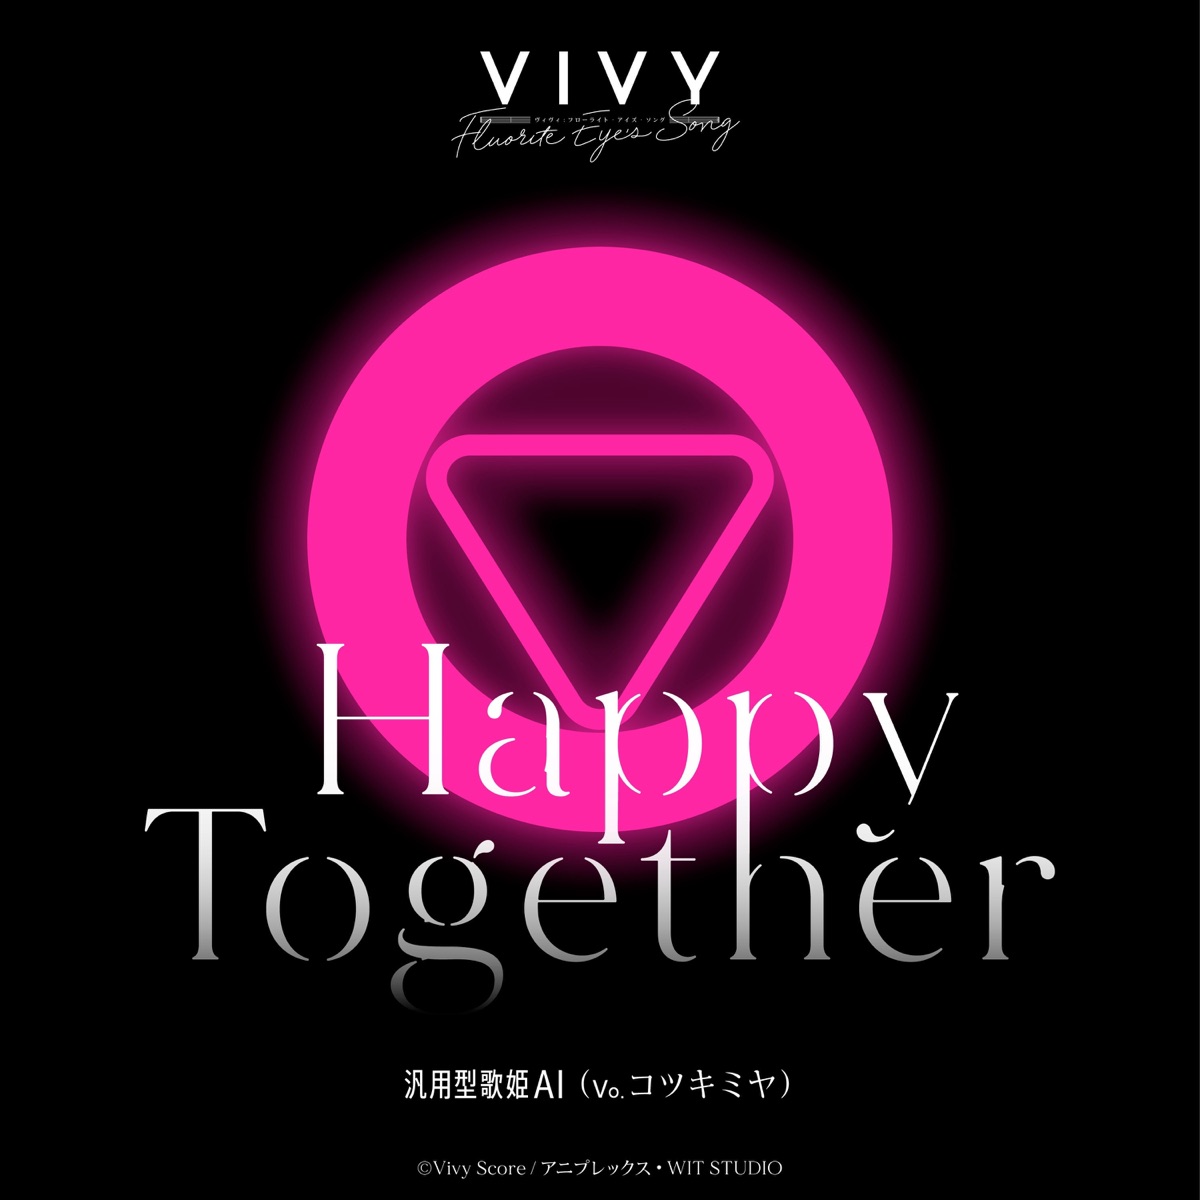 『汎用型歌姫AI(コツキミヤ) - Happy Together』収録の『Happy Together』ジャケット